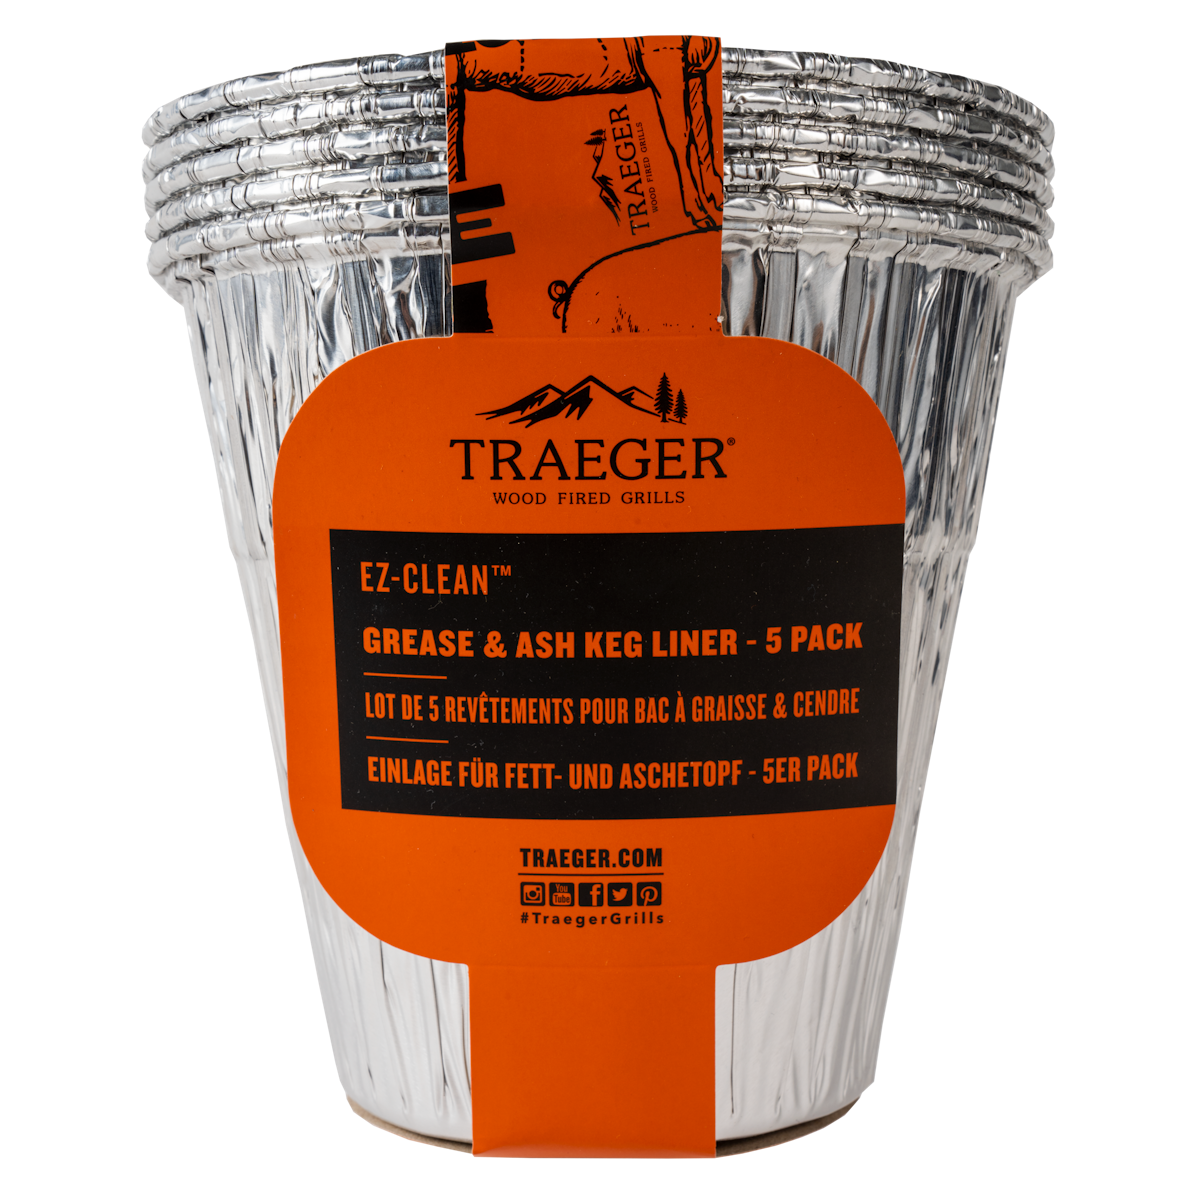 Traeger EZ-CLEAN Einlage für Fett & Aschebehälter, 5 Stück von Traeger